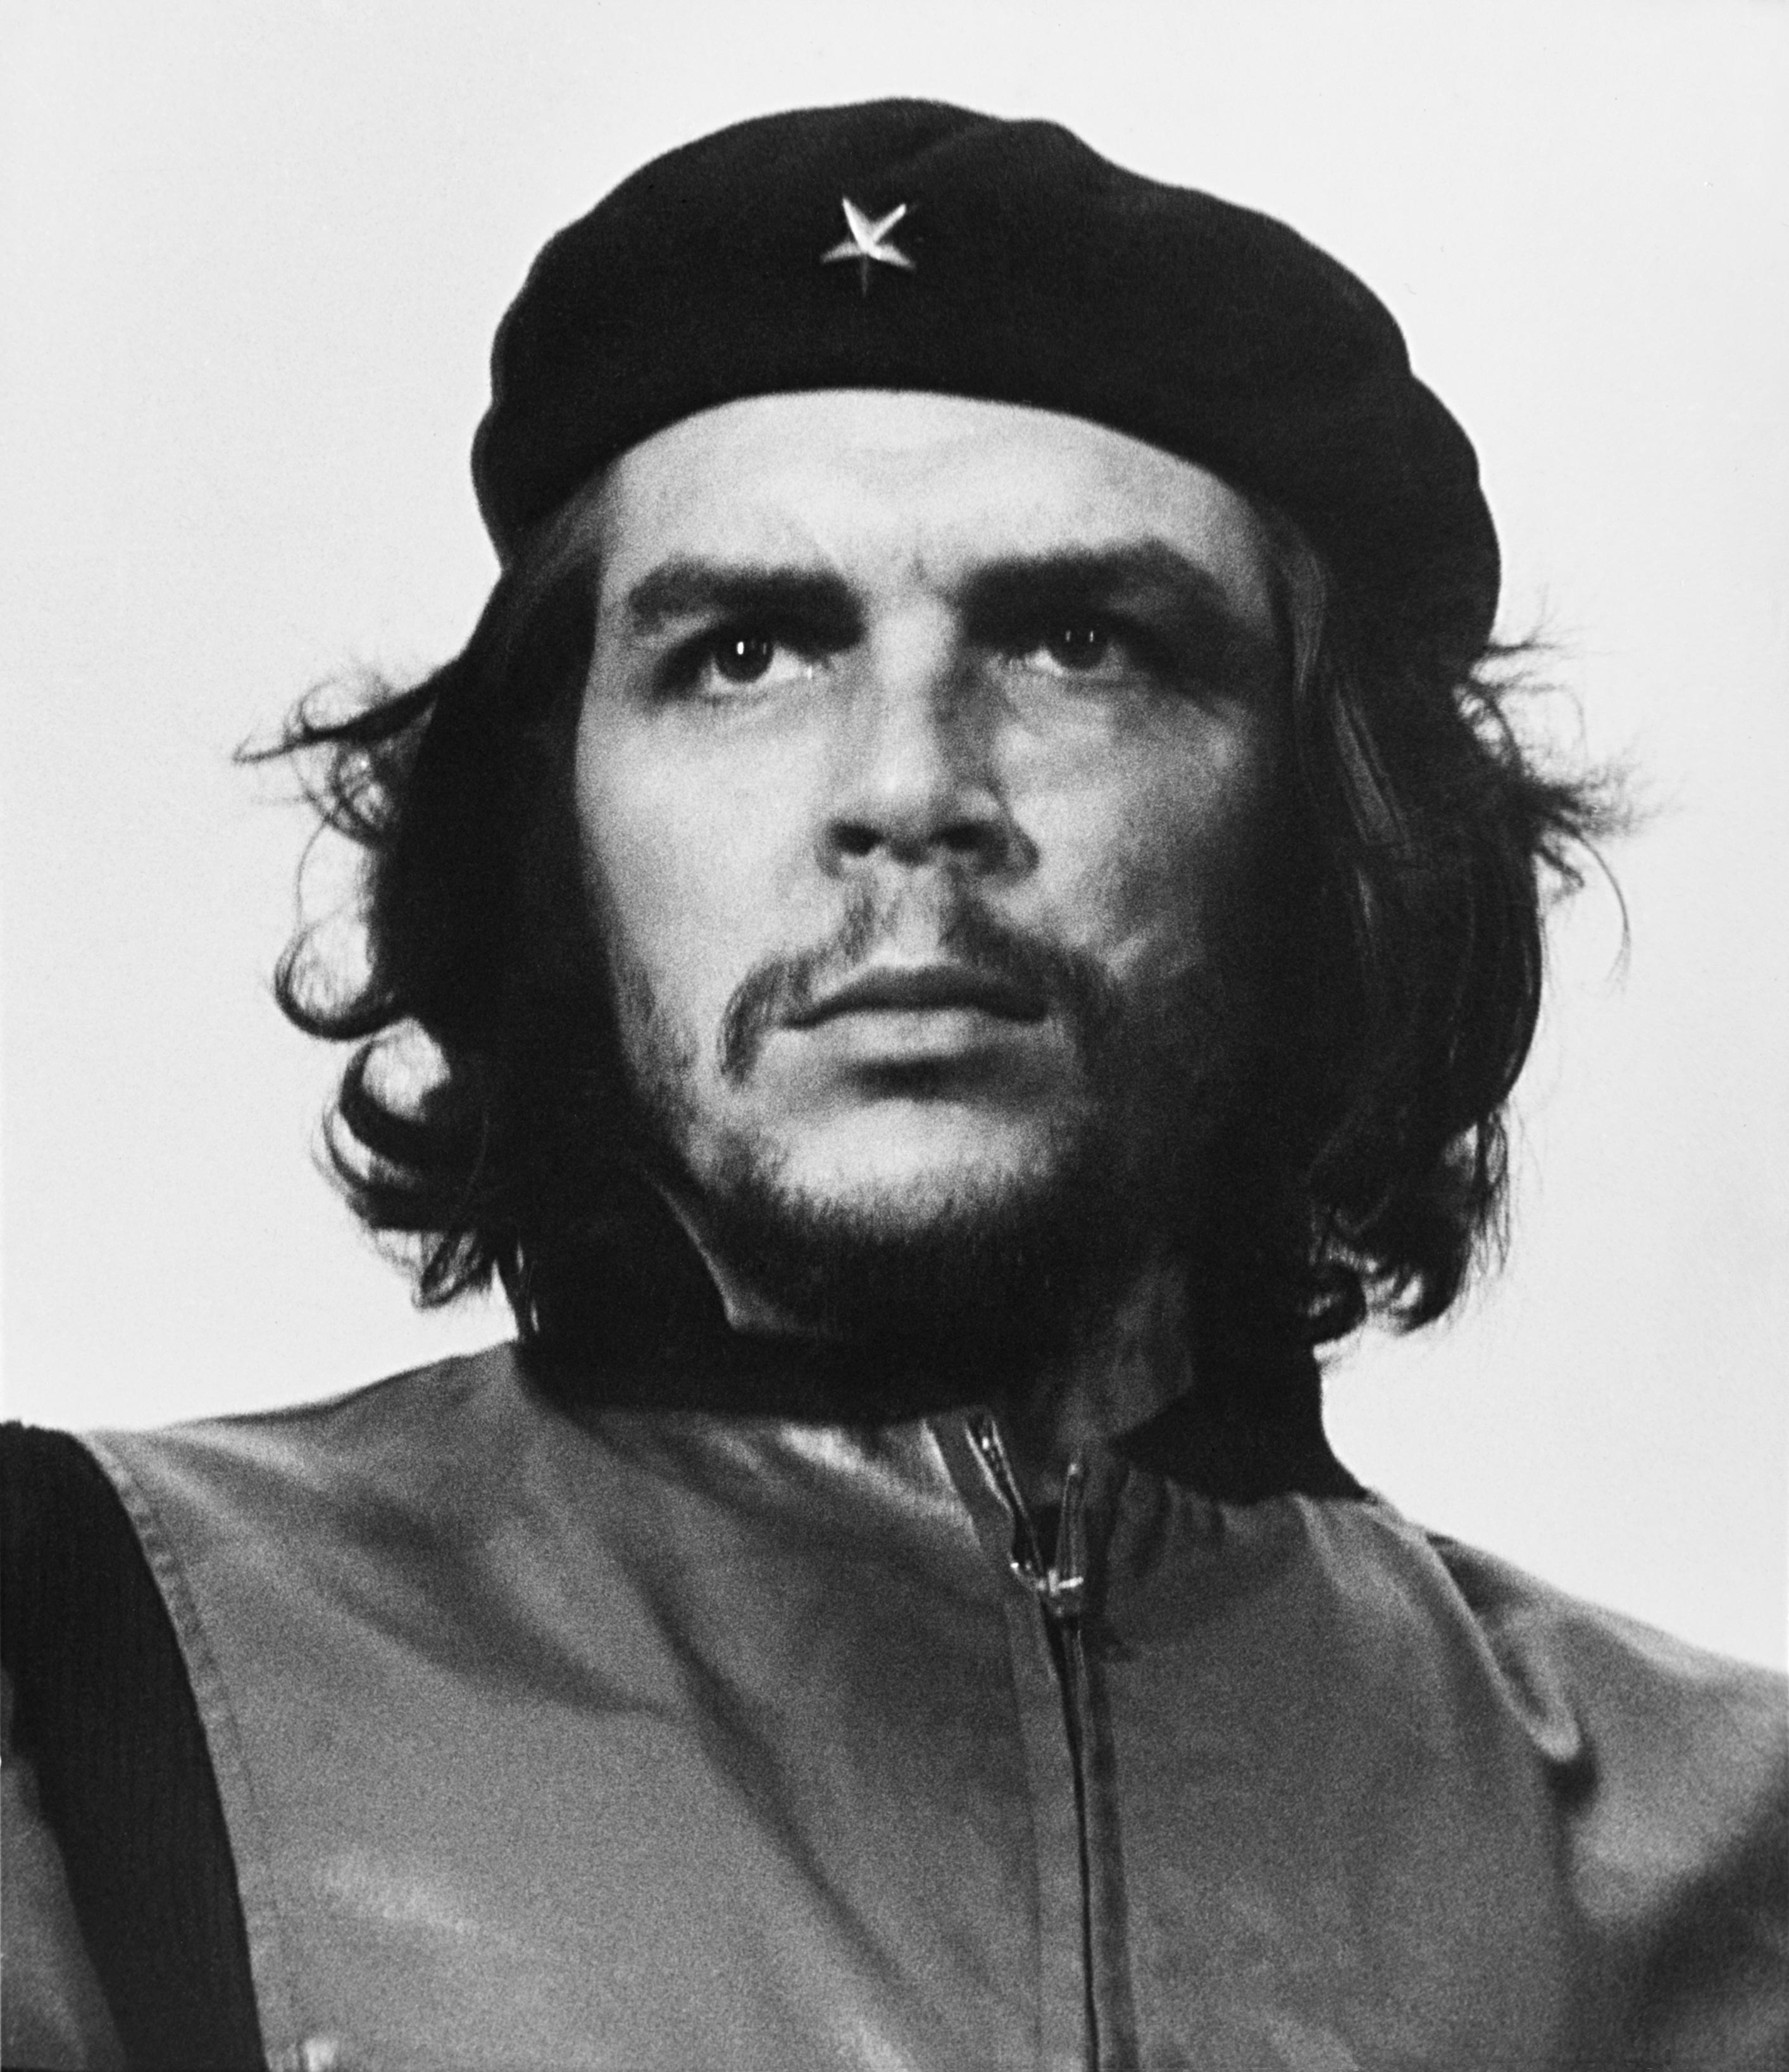 auteur Che Guevara de la citation Surtout, soyez toujours capable de ressentir profondément toute injustice commise contre qui que ce soit, n'importe où dans le monde. C'est la plus belle qualité chez un révolutionnaire.